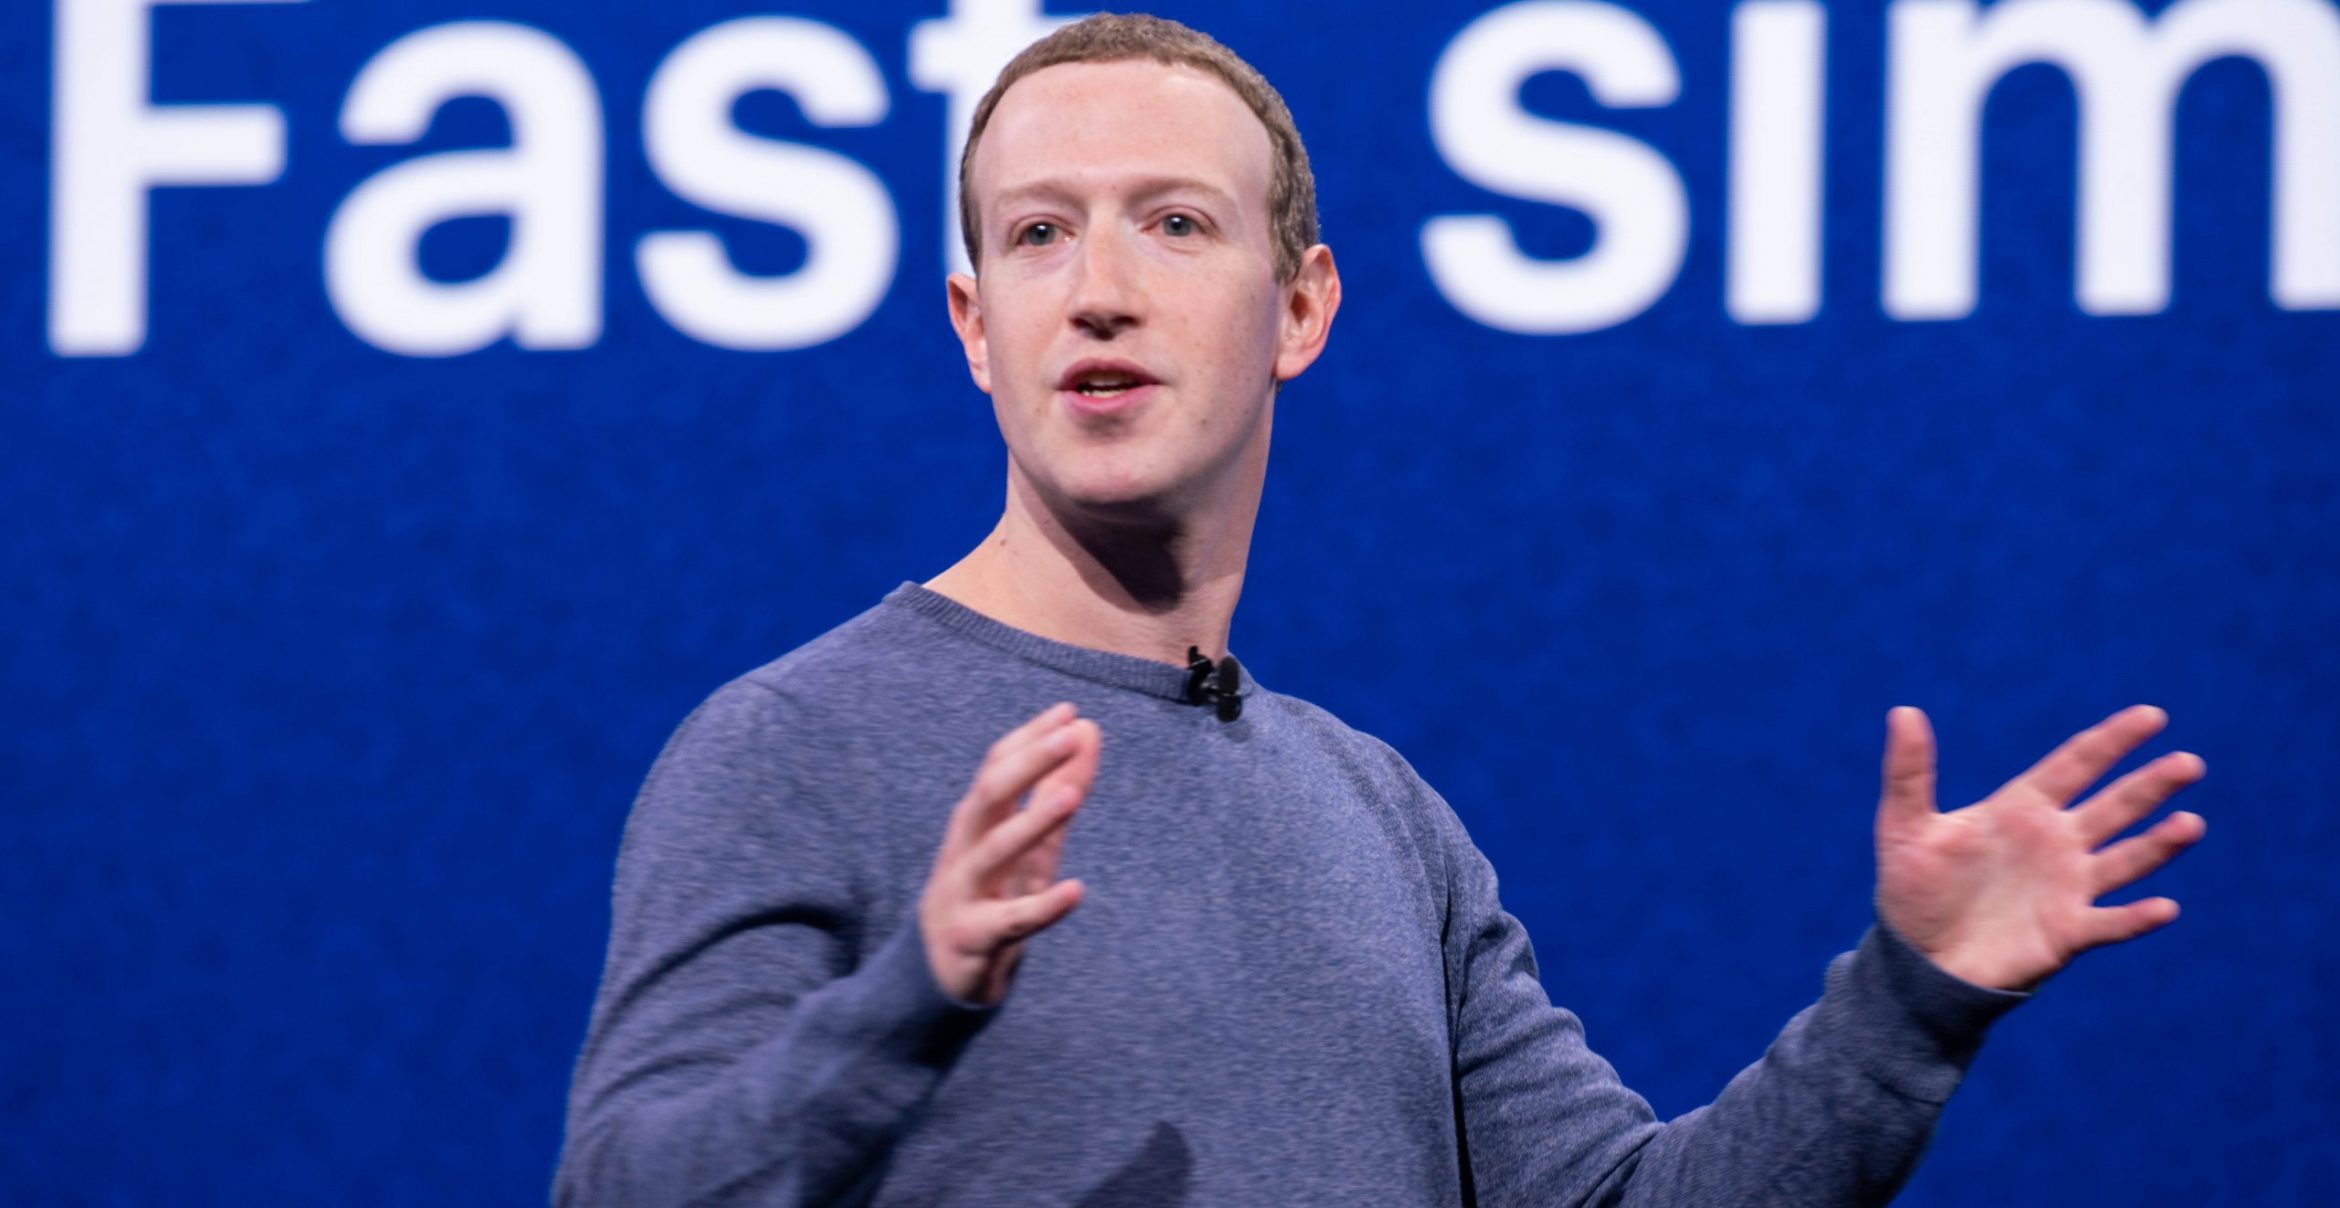 Mark Zuckerbergs überraschende Meinung zu den Jobs der Zukunft